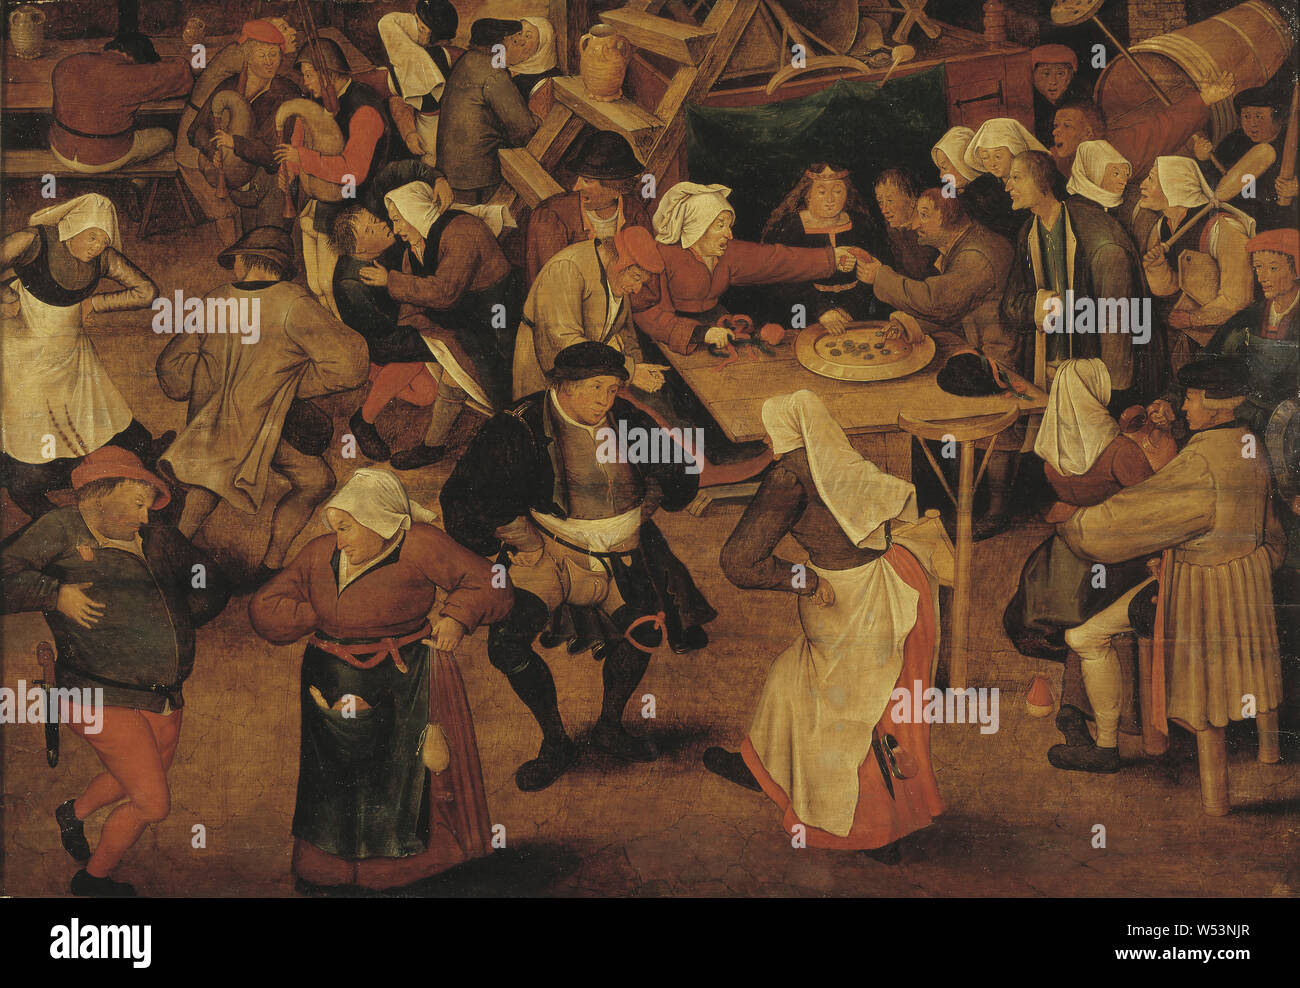 Nach Pieter Breughel der Jüngere, die Hochzeit Tanz, Bondage, Malerei, Öl auf Leinwand, Höhe 72 cm (28,3 Zoll), Breite 104 cm (40,9 Zoll), von 'Geändert', zurückzuführen auf orig nach verlorenen orig Kopieren, durch P Bruegel dä Stockfoto